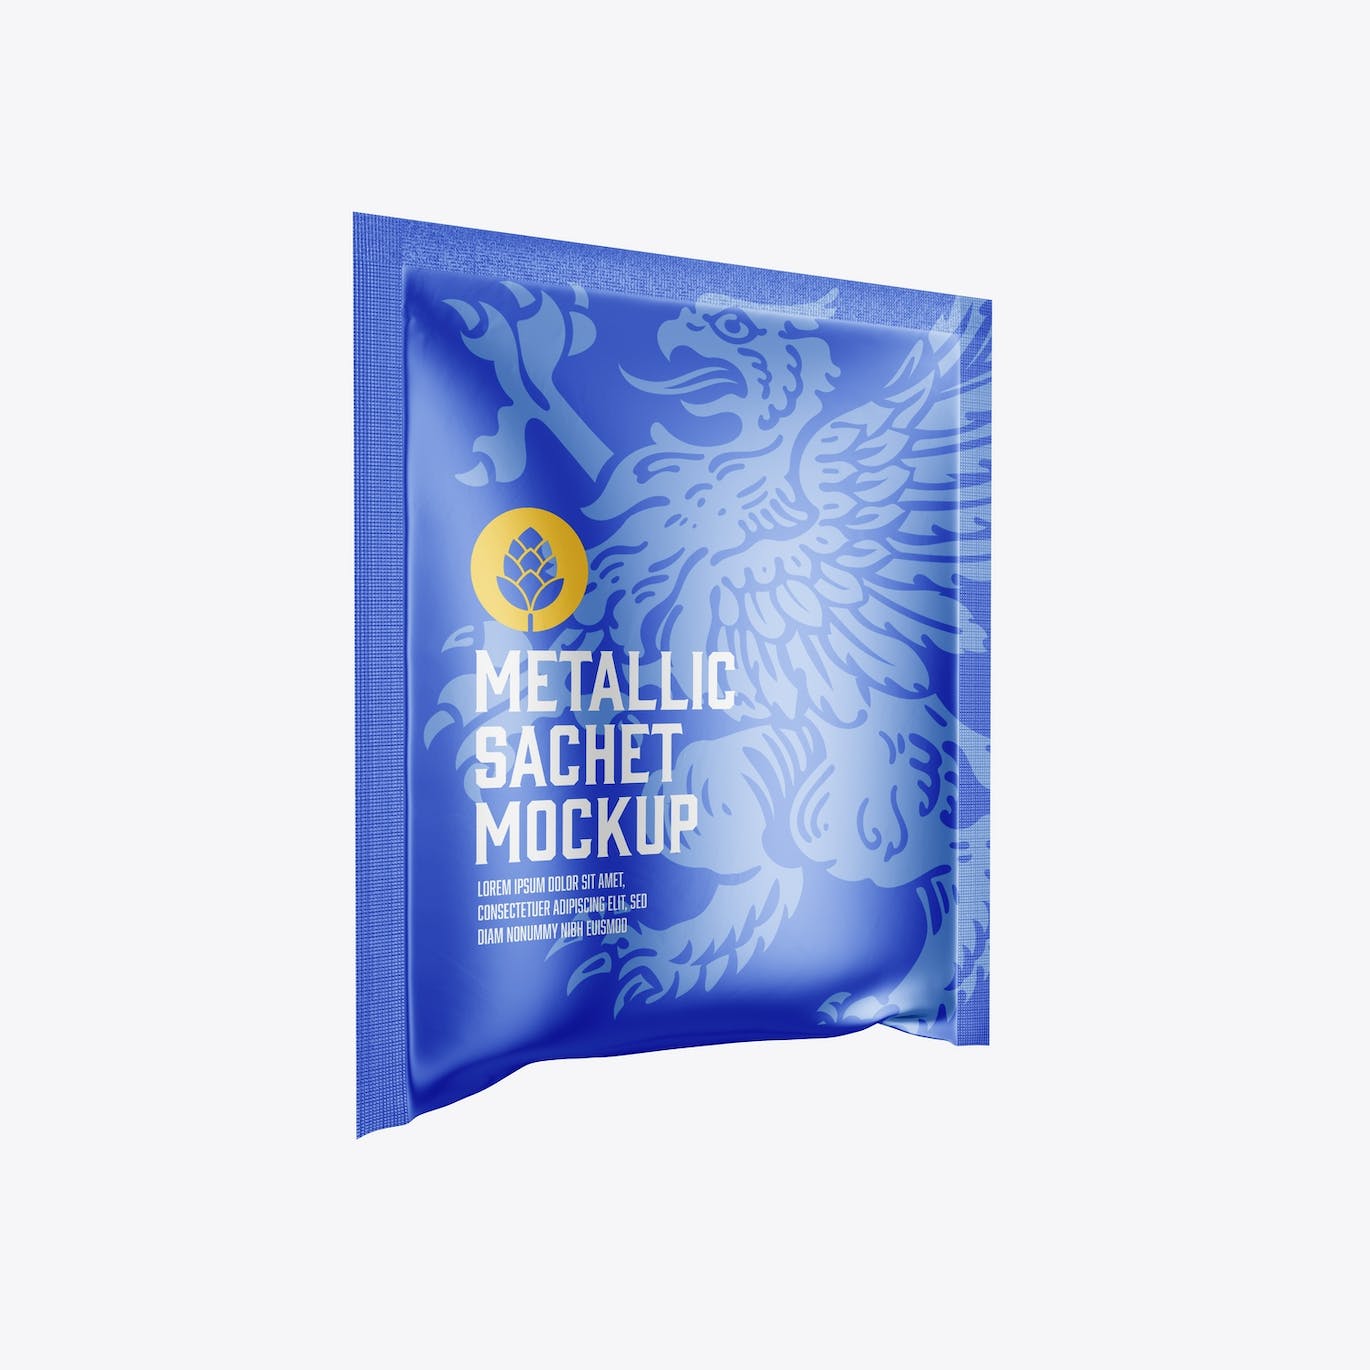 金属材质包装袋设计样机图 Metallic Sachet Mockup 样机素材 第3张